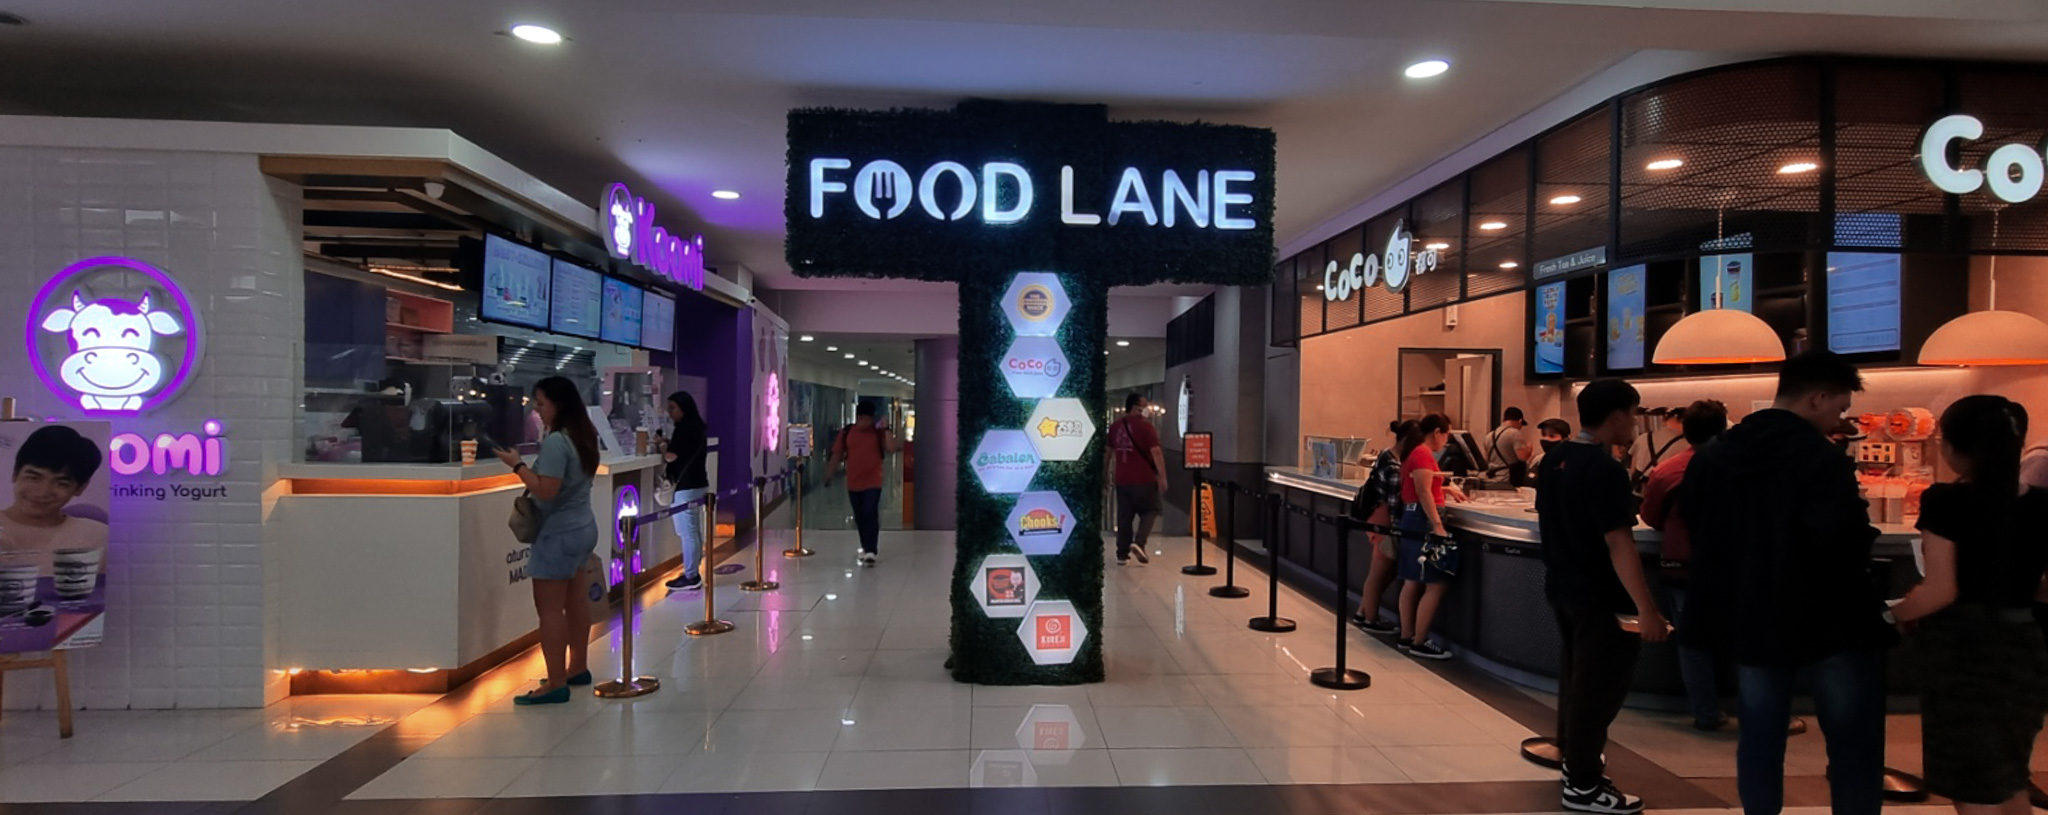 Food Crawl in Ali Mall Food Lane